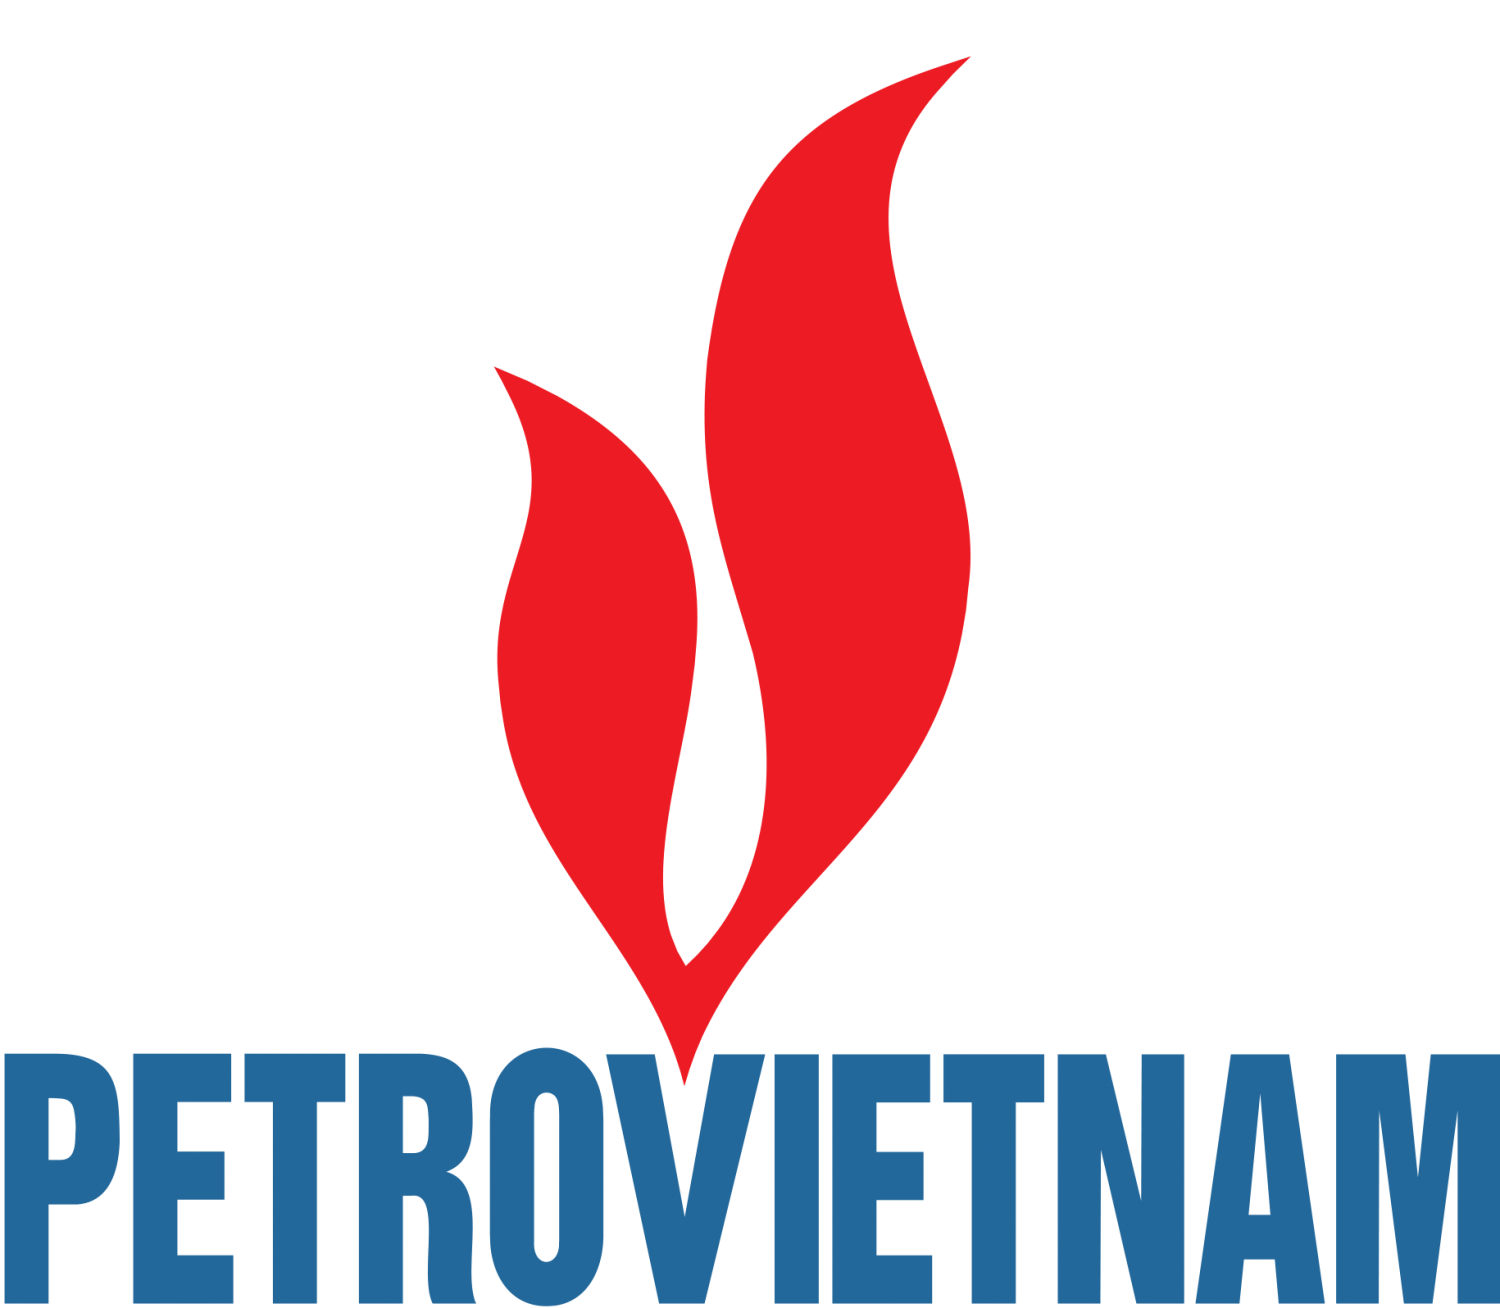 Petrovietnam ra mắt bộ nhận diện thương hiệu mới: Chủ động thích ứng, sẵn sàng tâm thế cho giai đoạn phát triển mới